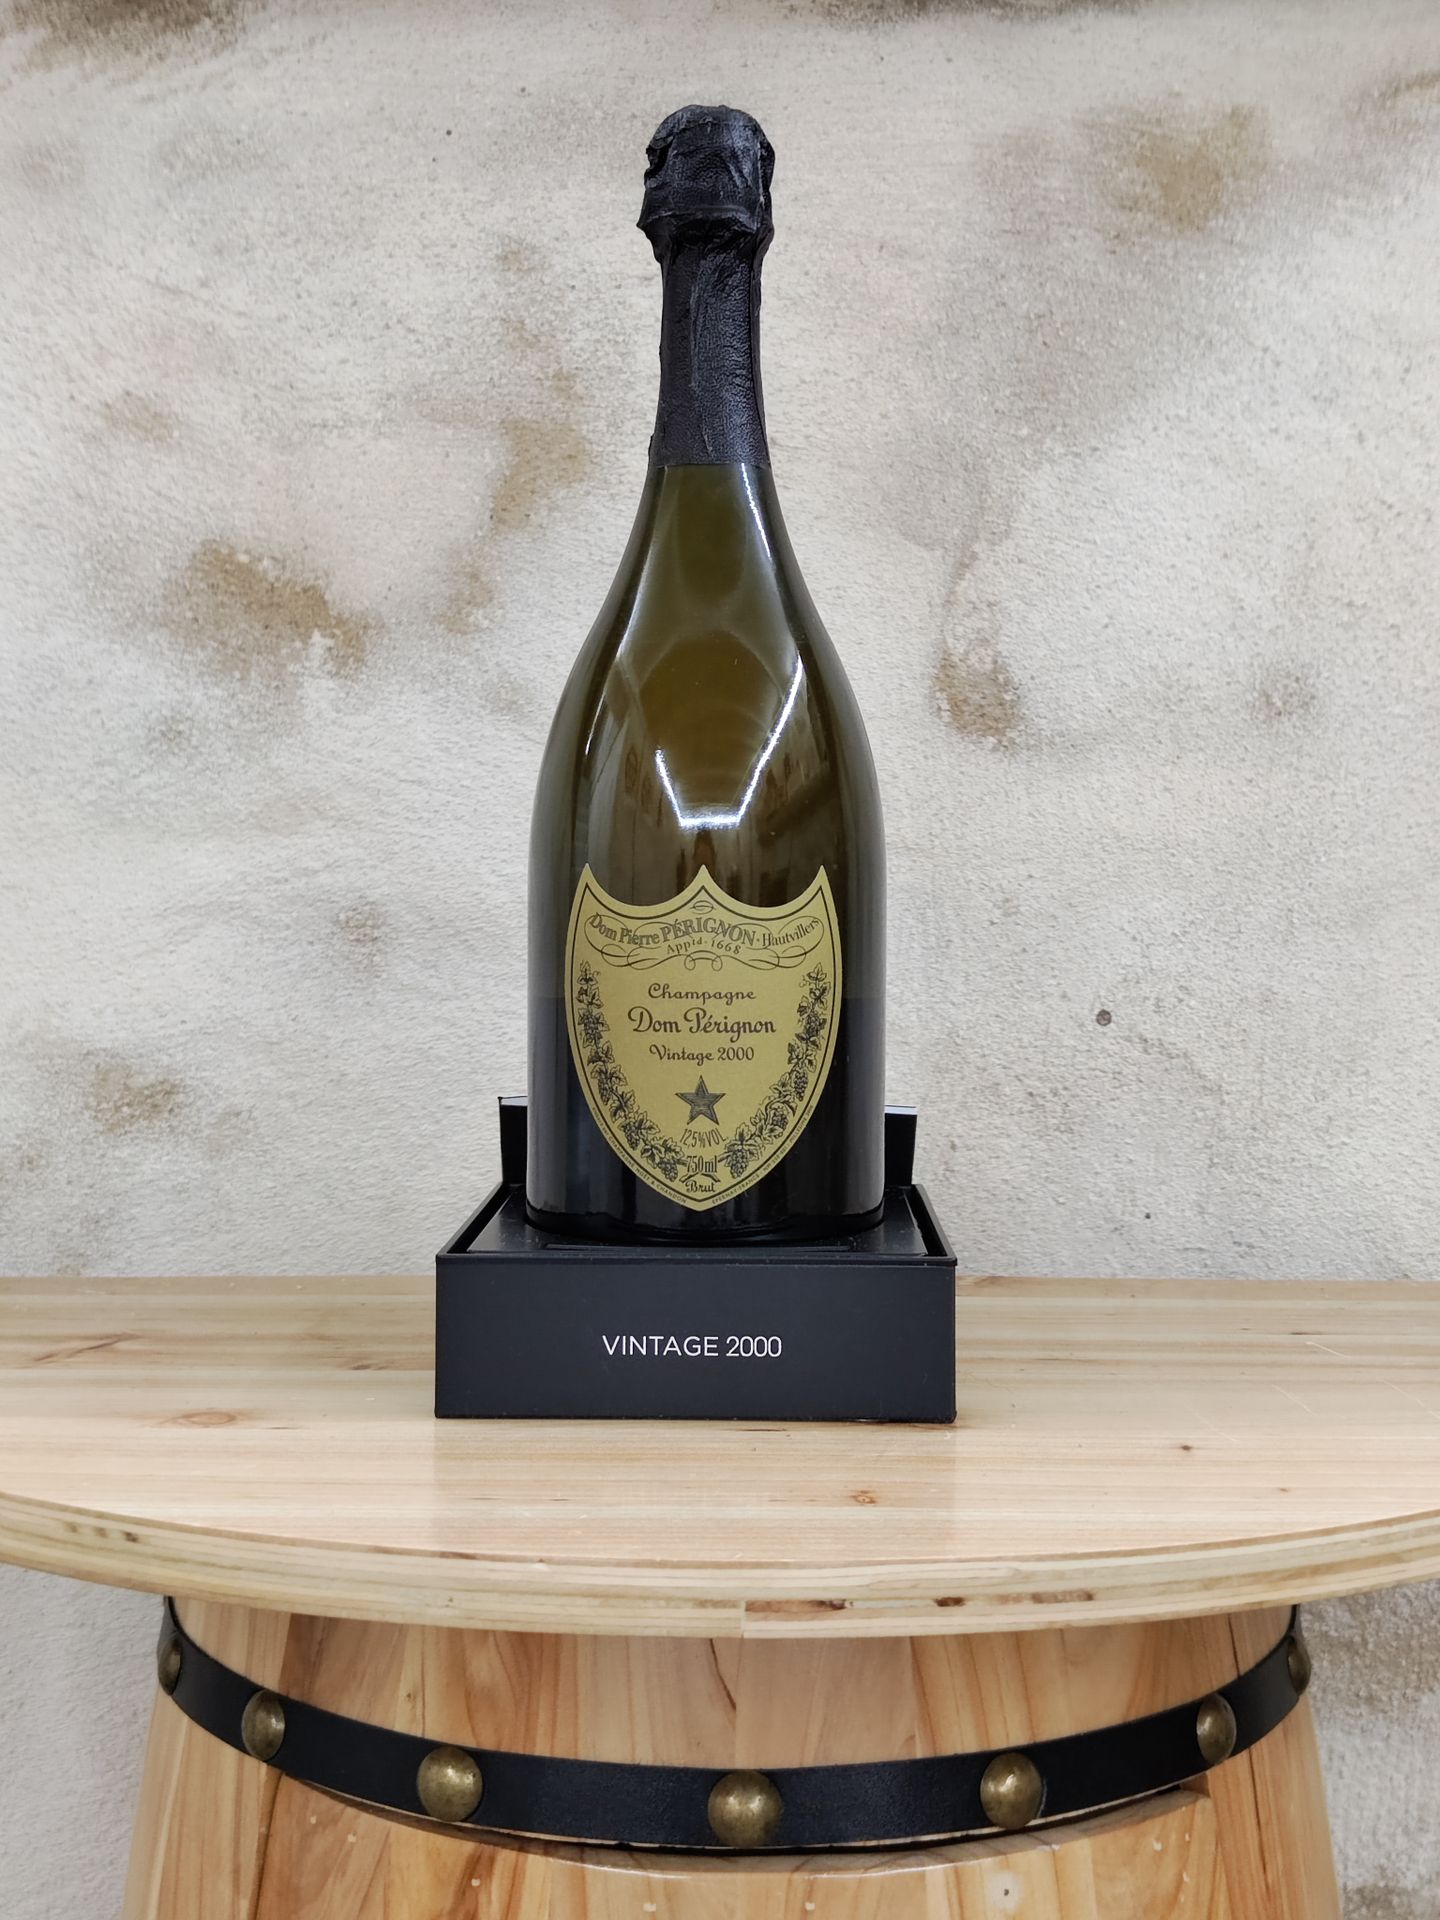 Null 1 bottiglia di champagne DOM PERIGNON brut, annata 2000.
Nella sua scatola.